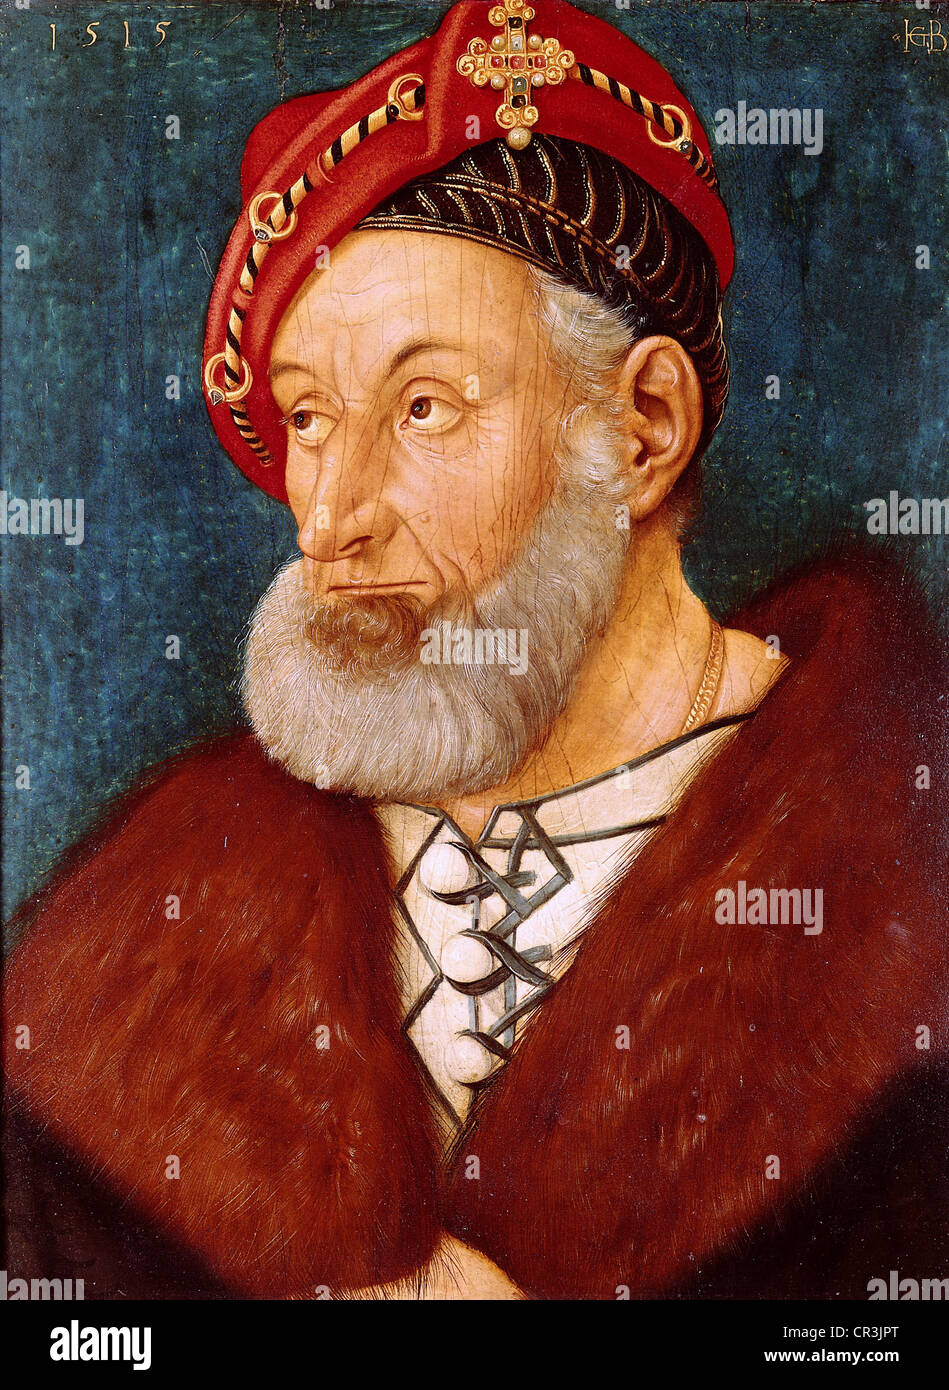 Christopher I, 13.11.1453 - 19.3.1527, Margrave de Baden-Baden 1475 - 1515, portrait, peinture de Hans Baldung Grien, 1515, Alte Pinakothek, Munich, Banque D'Images